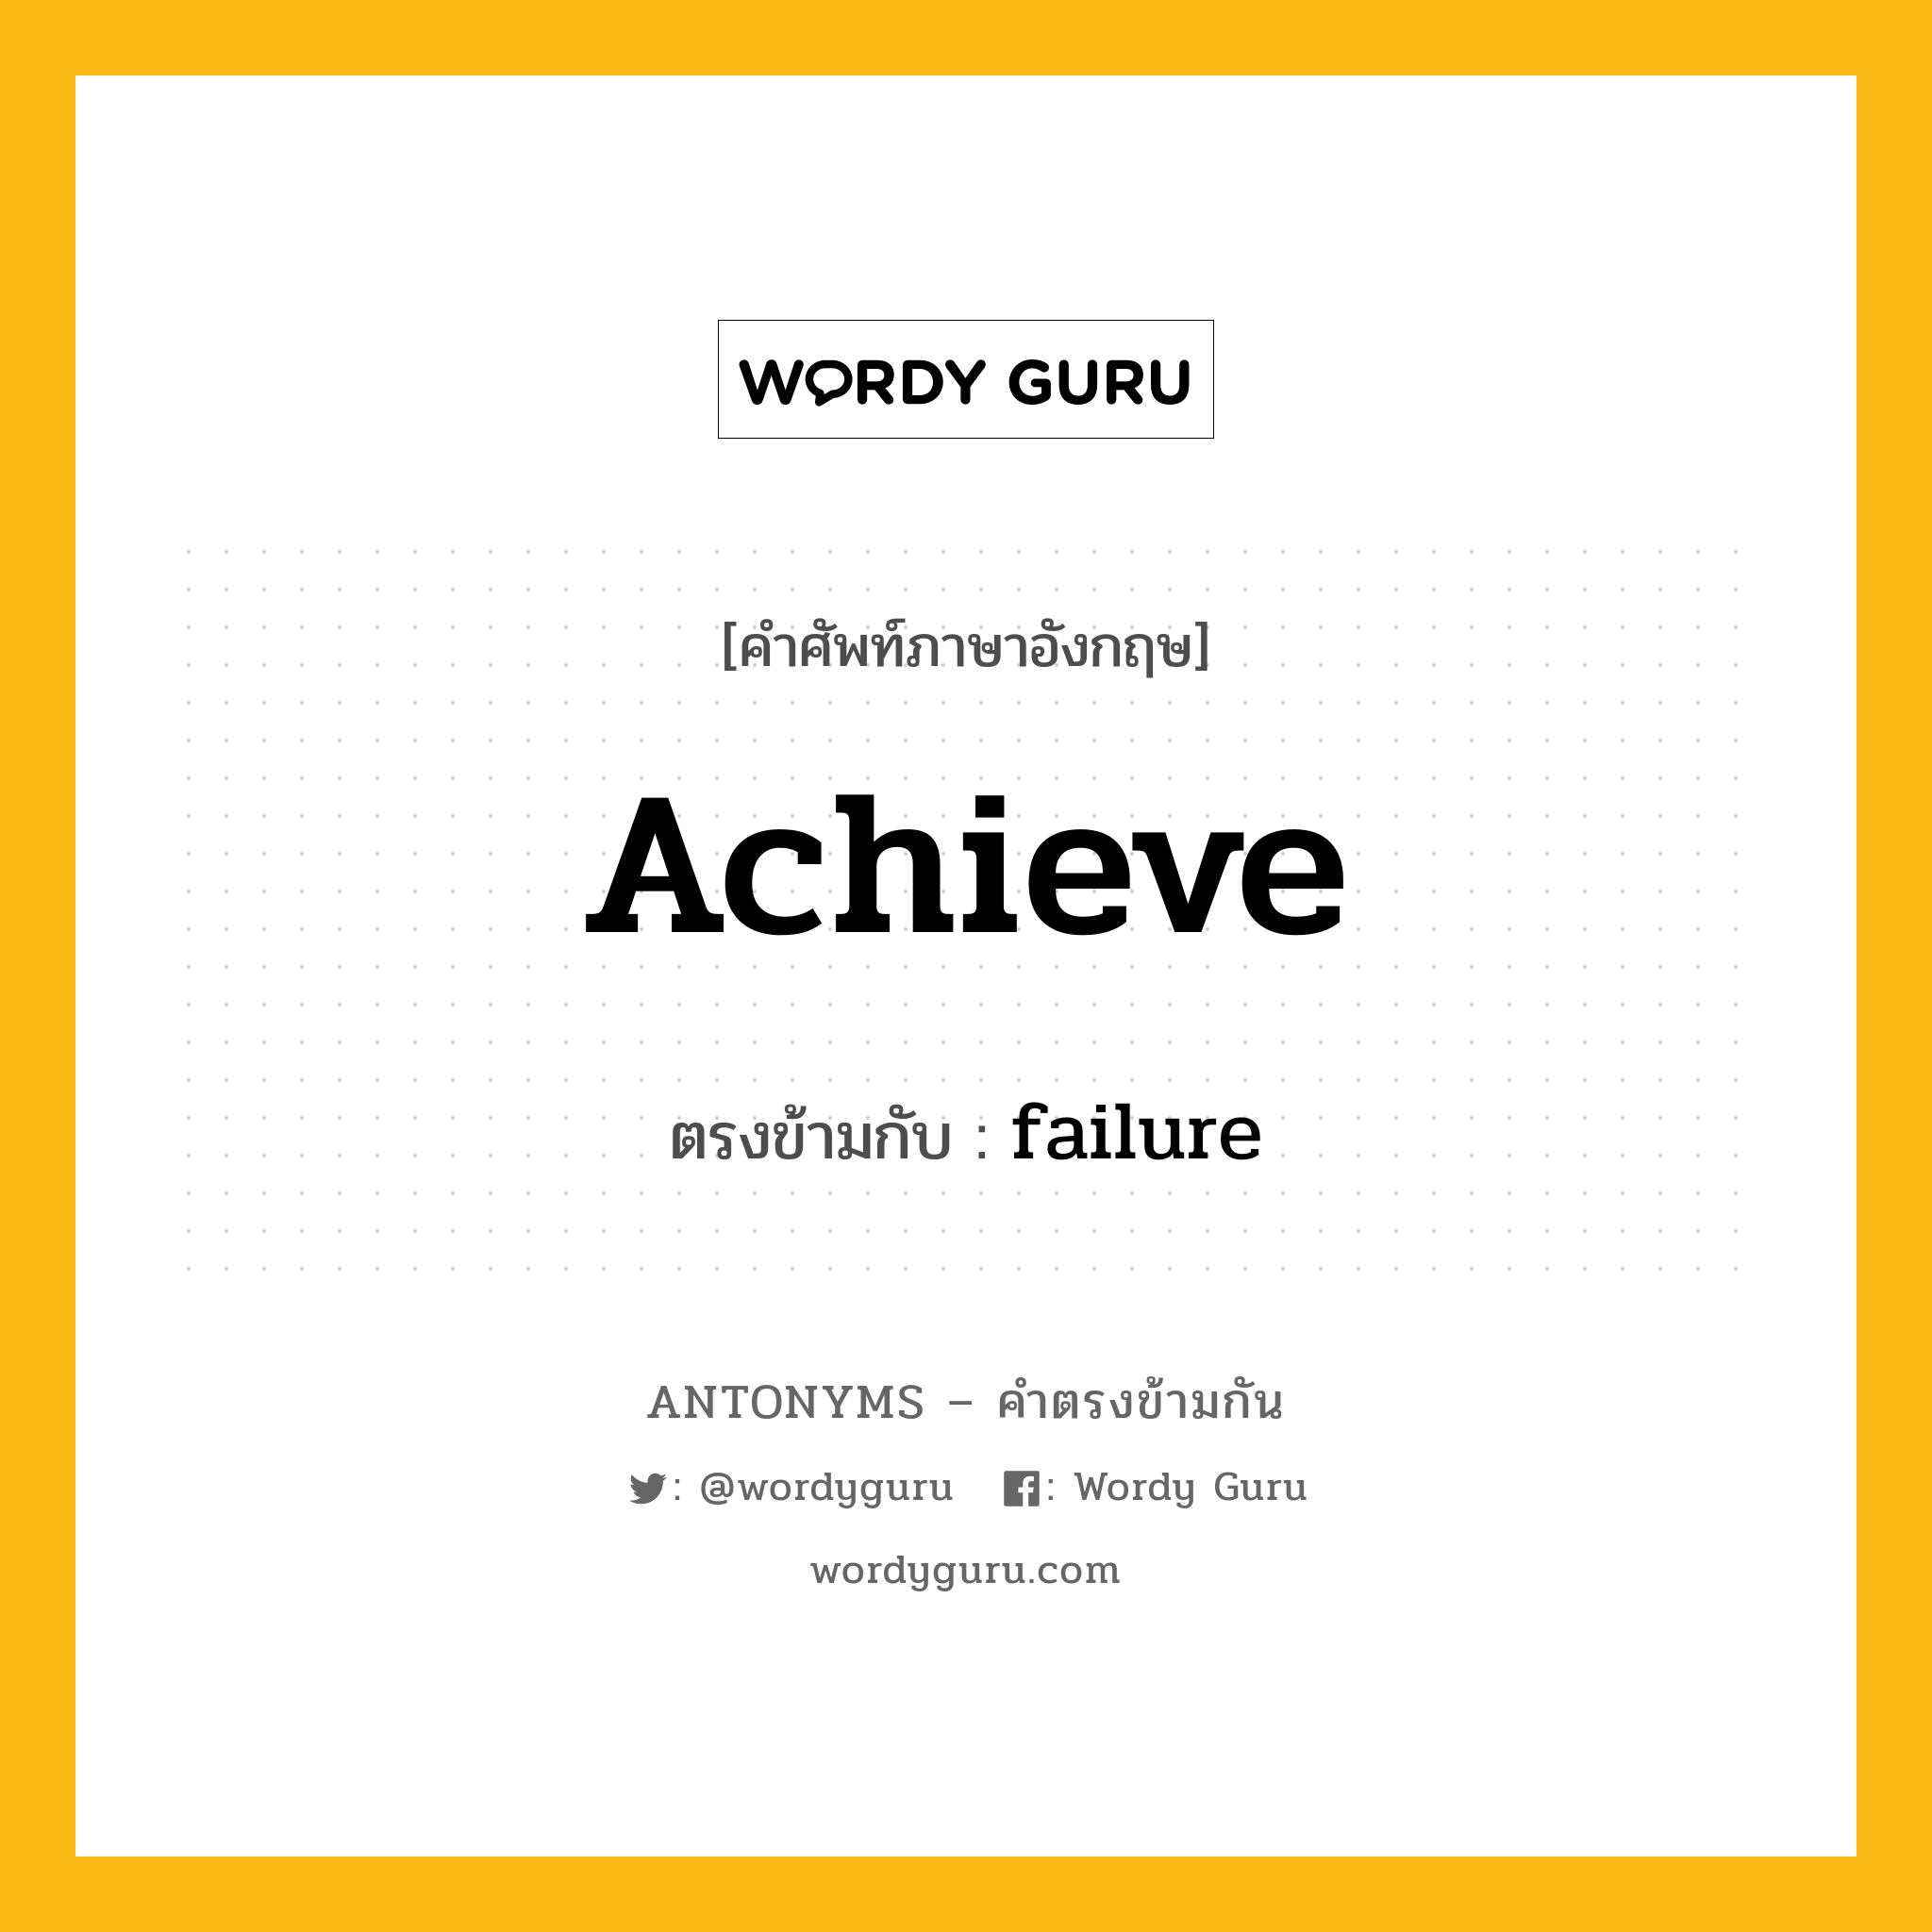 achieve เป็นคำตรงข้ามกับคำไหนบ้าง?, คำศัพท์ภาษาอังกฤษ achieve ตรงข้ามกับ failure หมวด failure